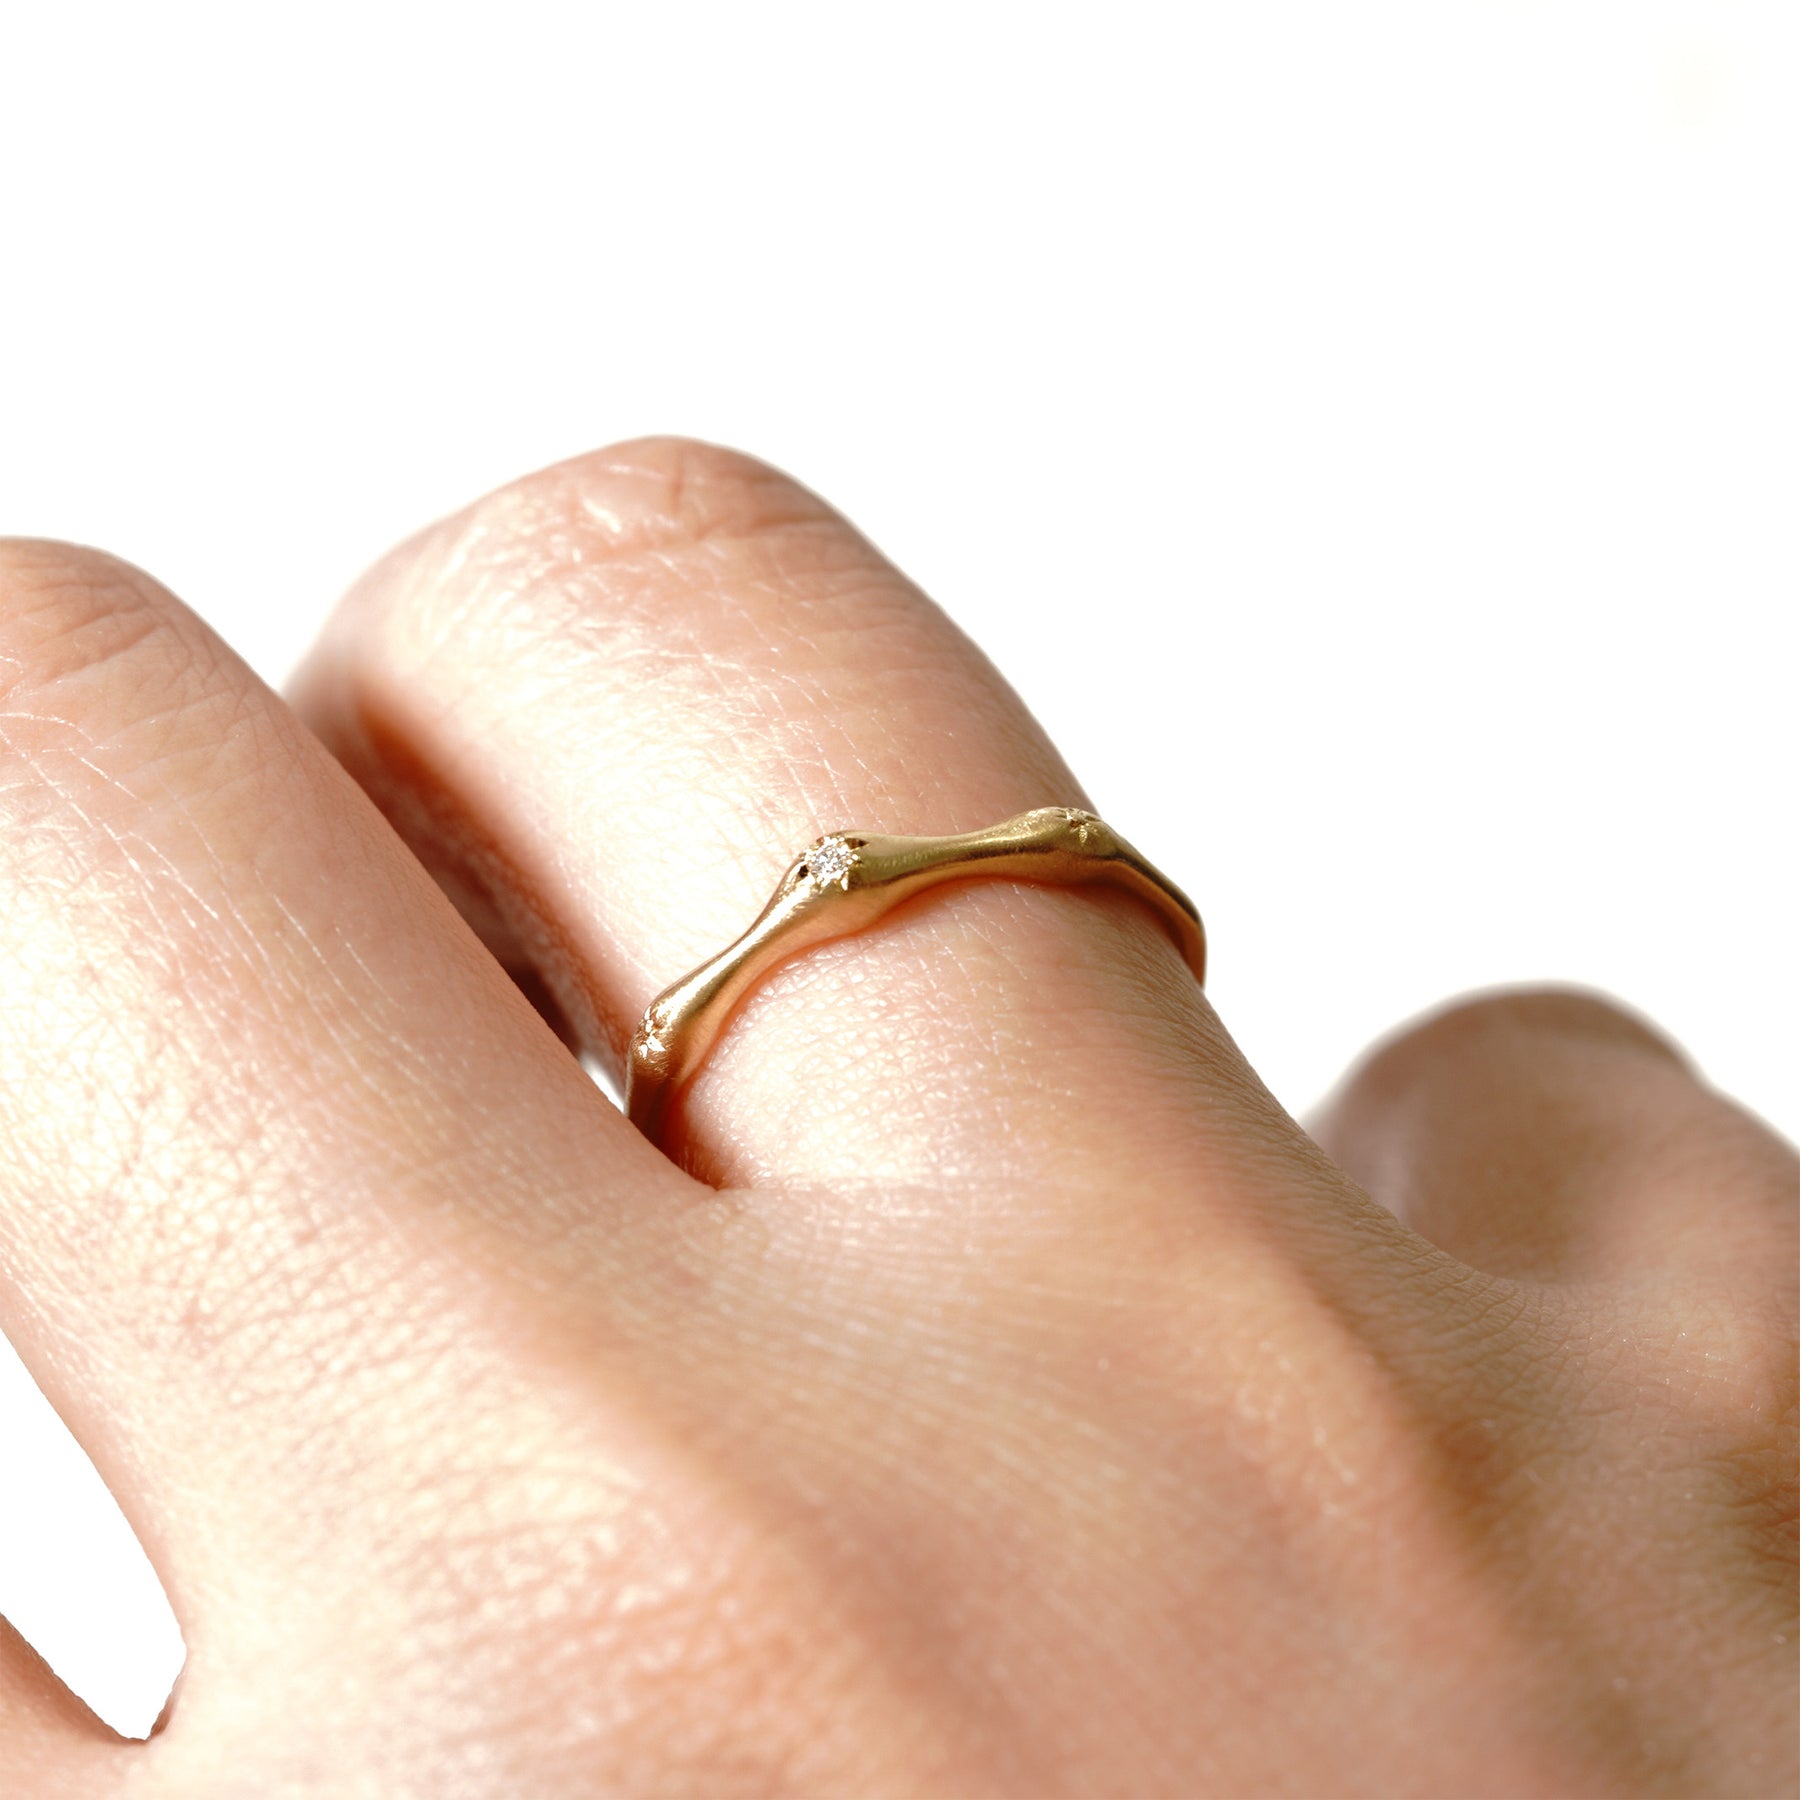 ミツボシの指環